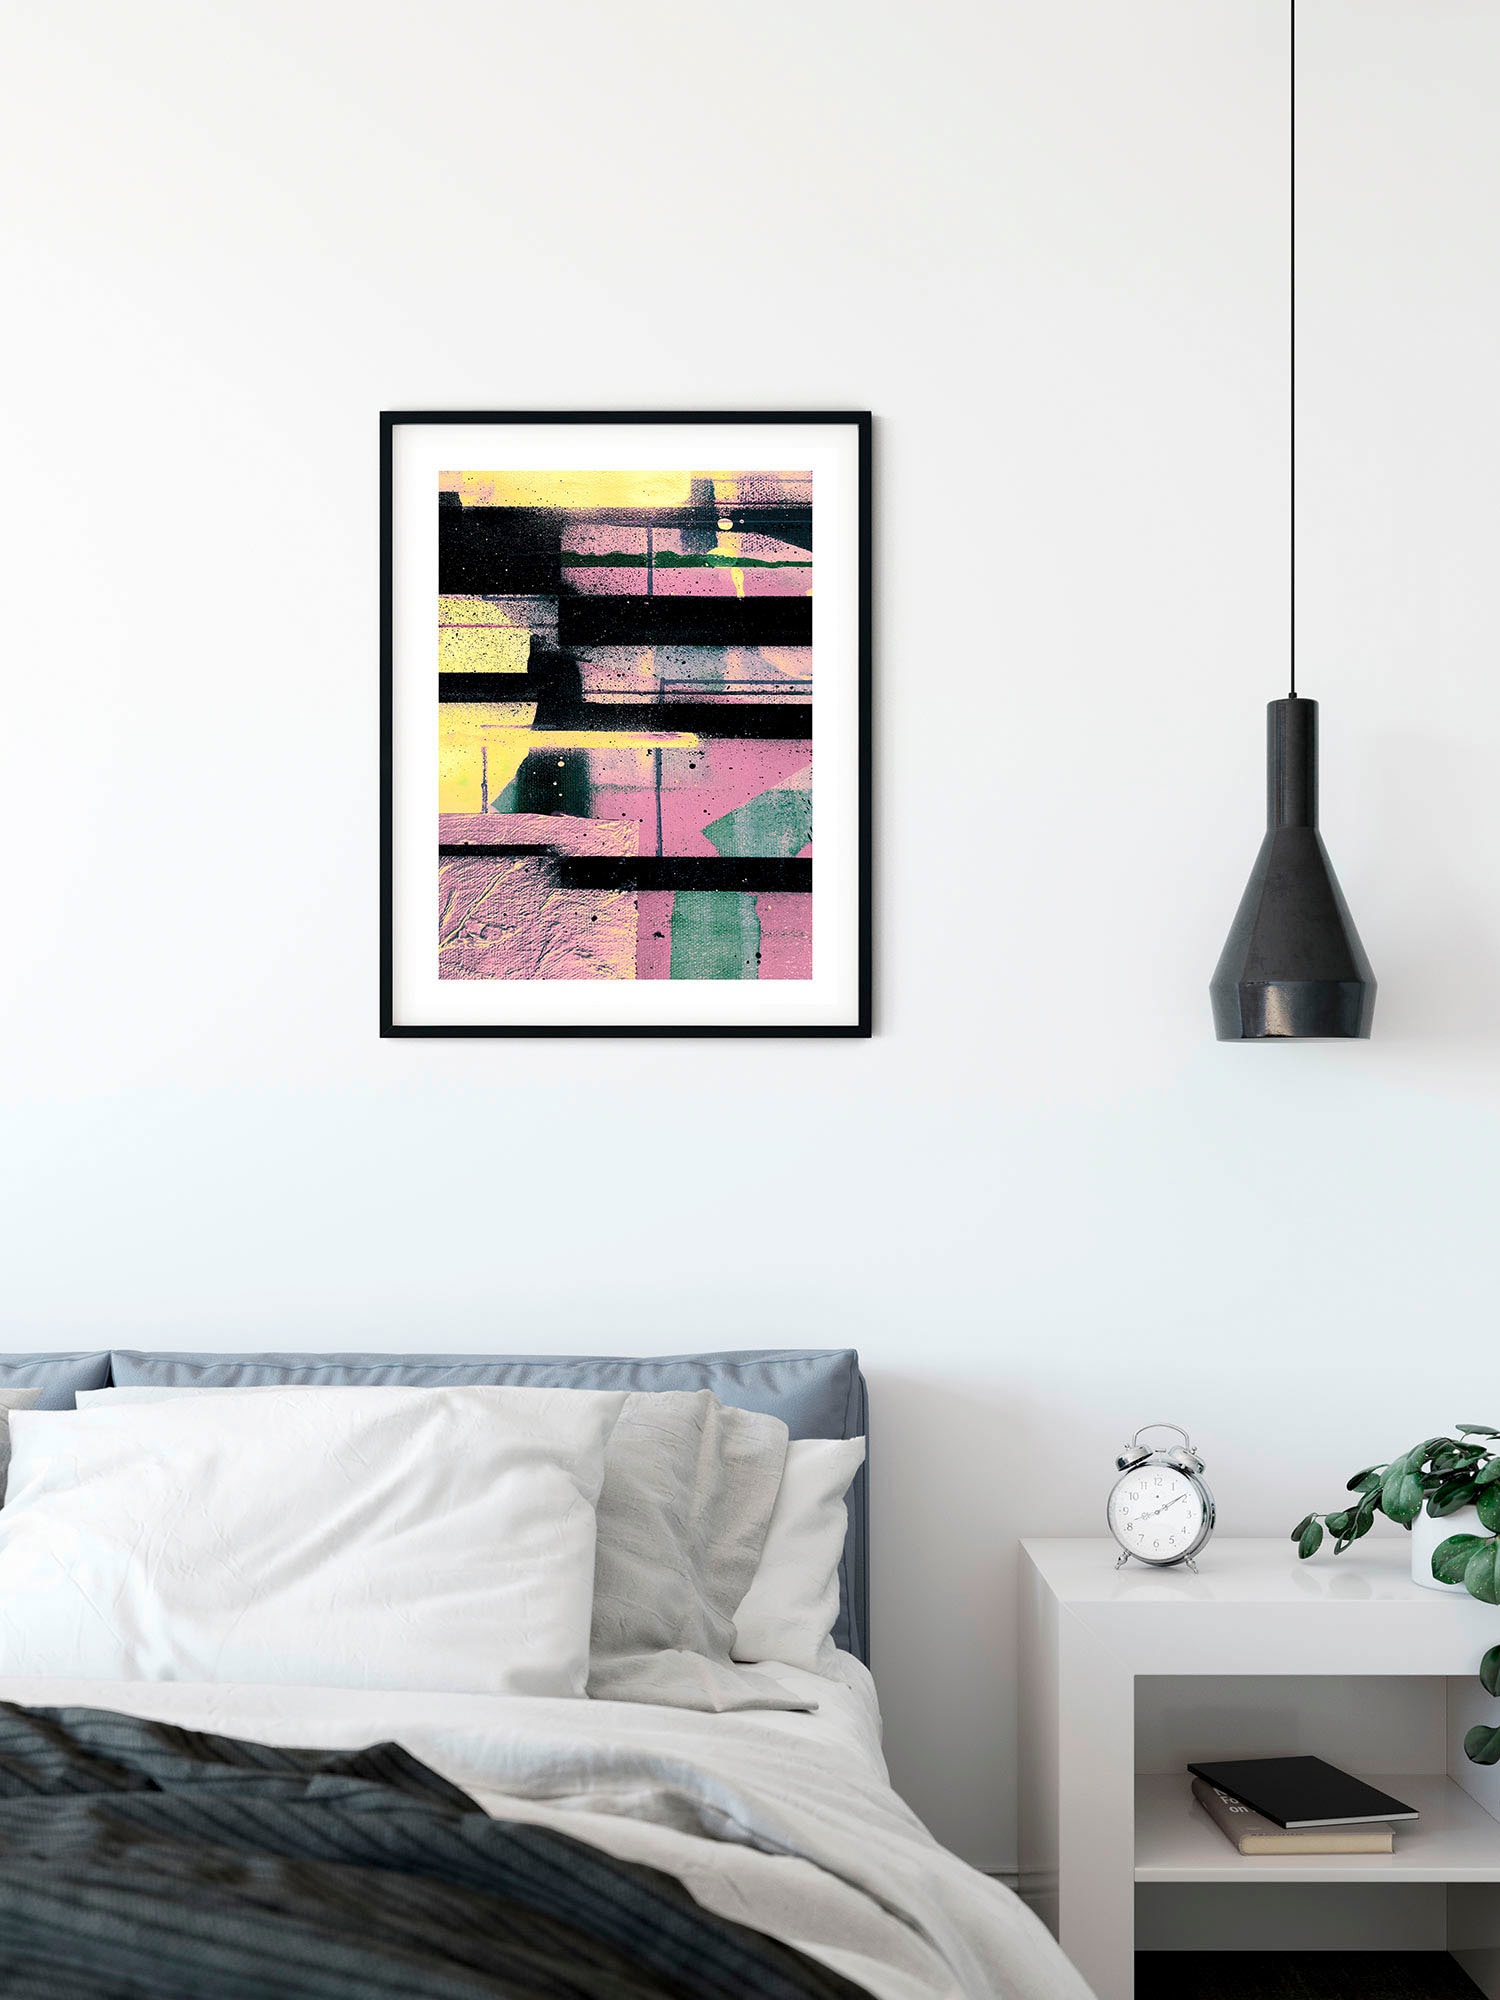 Komar Wandbild »Colorful Forte«, (1 St.), Deutsches Premium-Poster Fotopapier mit seidenmatter Oberfläche und hoher Lichtbeständigkeit. Für fotorealistische Drucke mit gestochen scharfen Details und hervorragender Farbbrillanz.